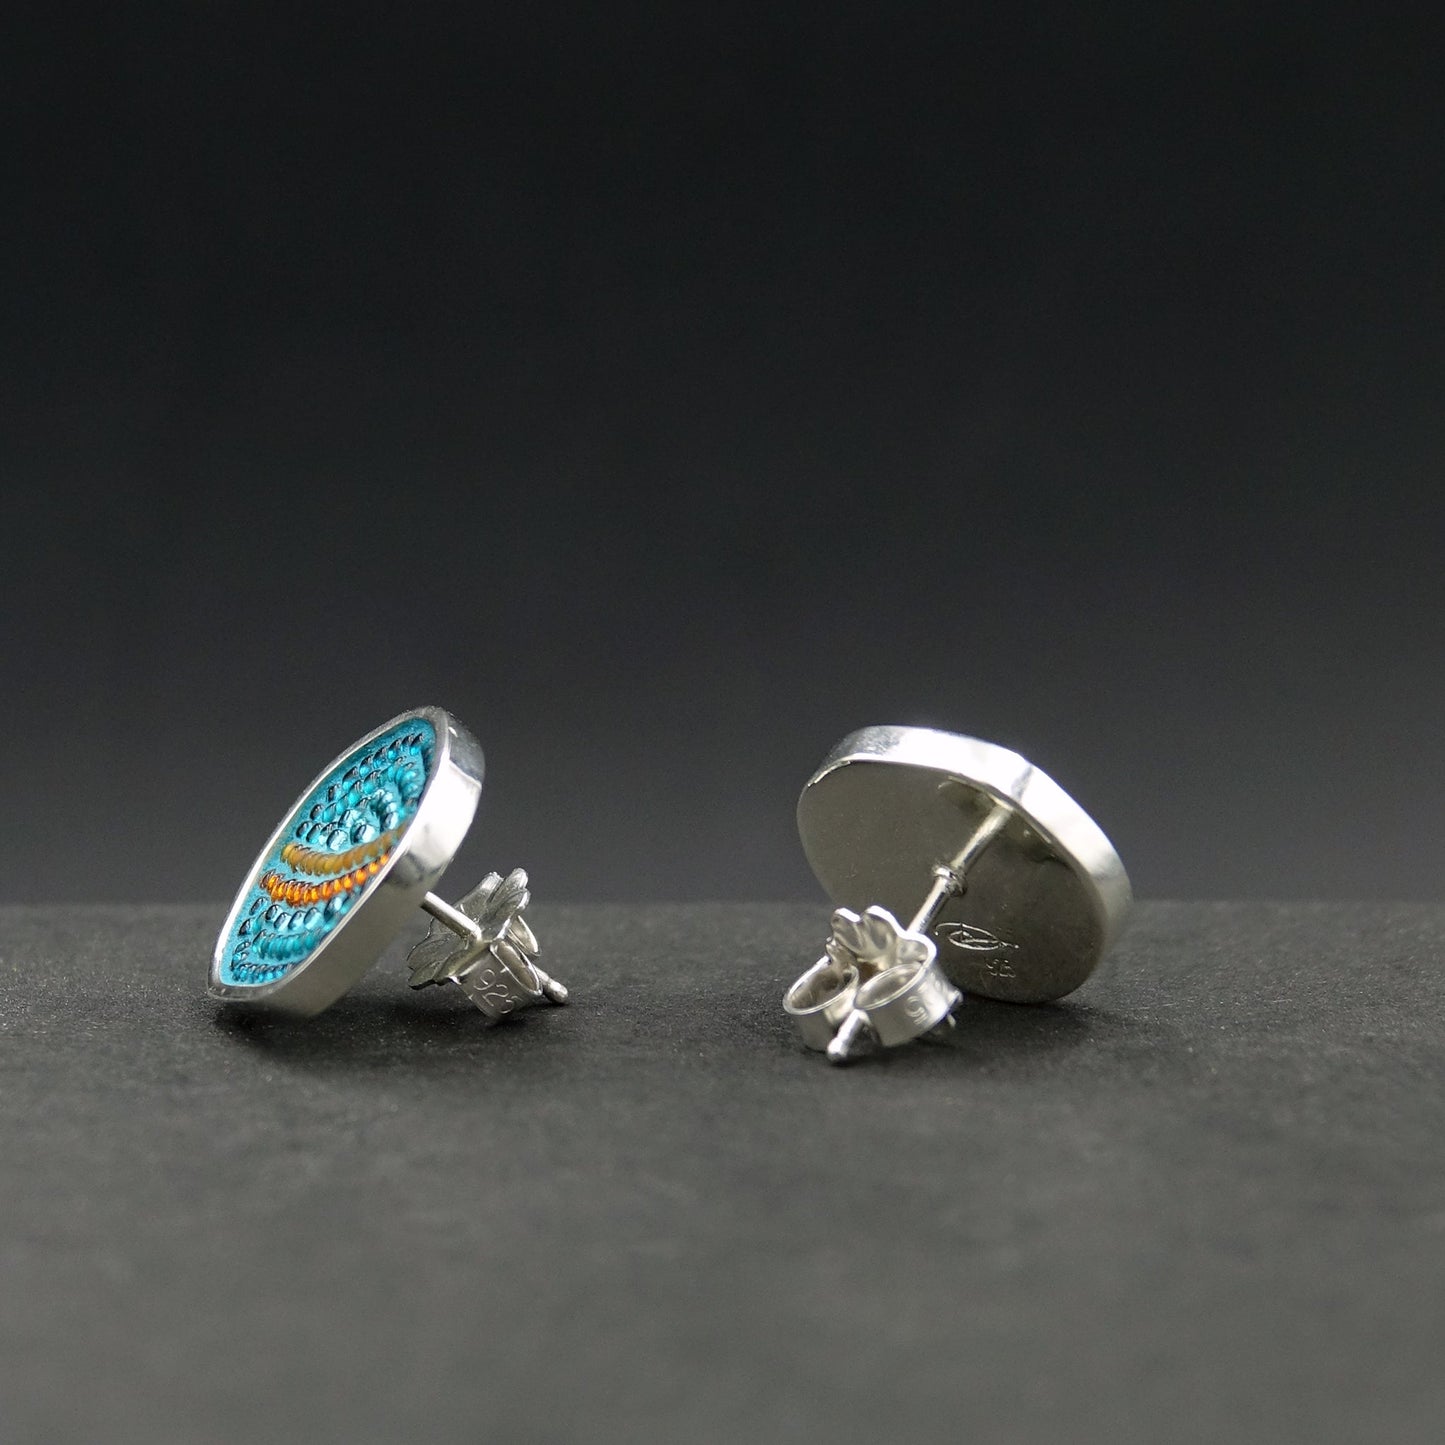 More Pebbles II earrings